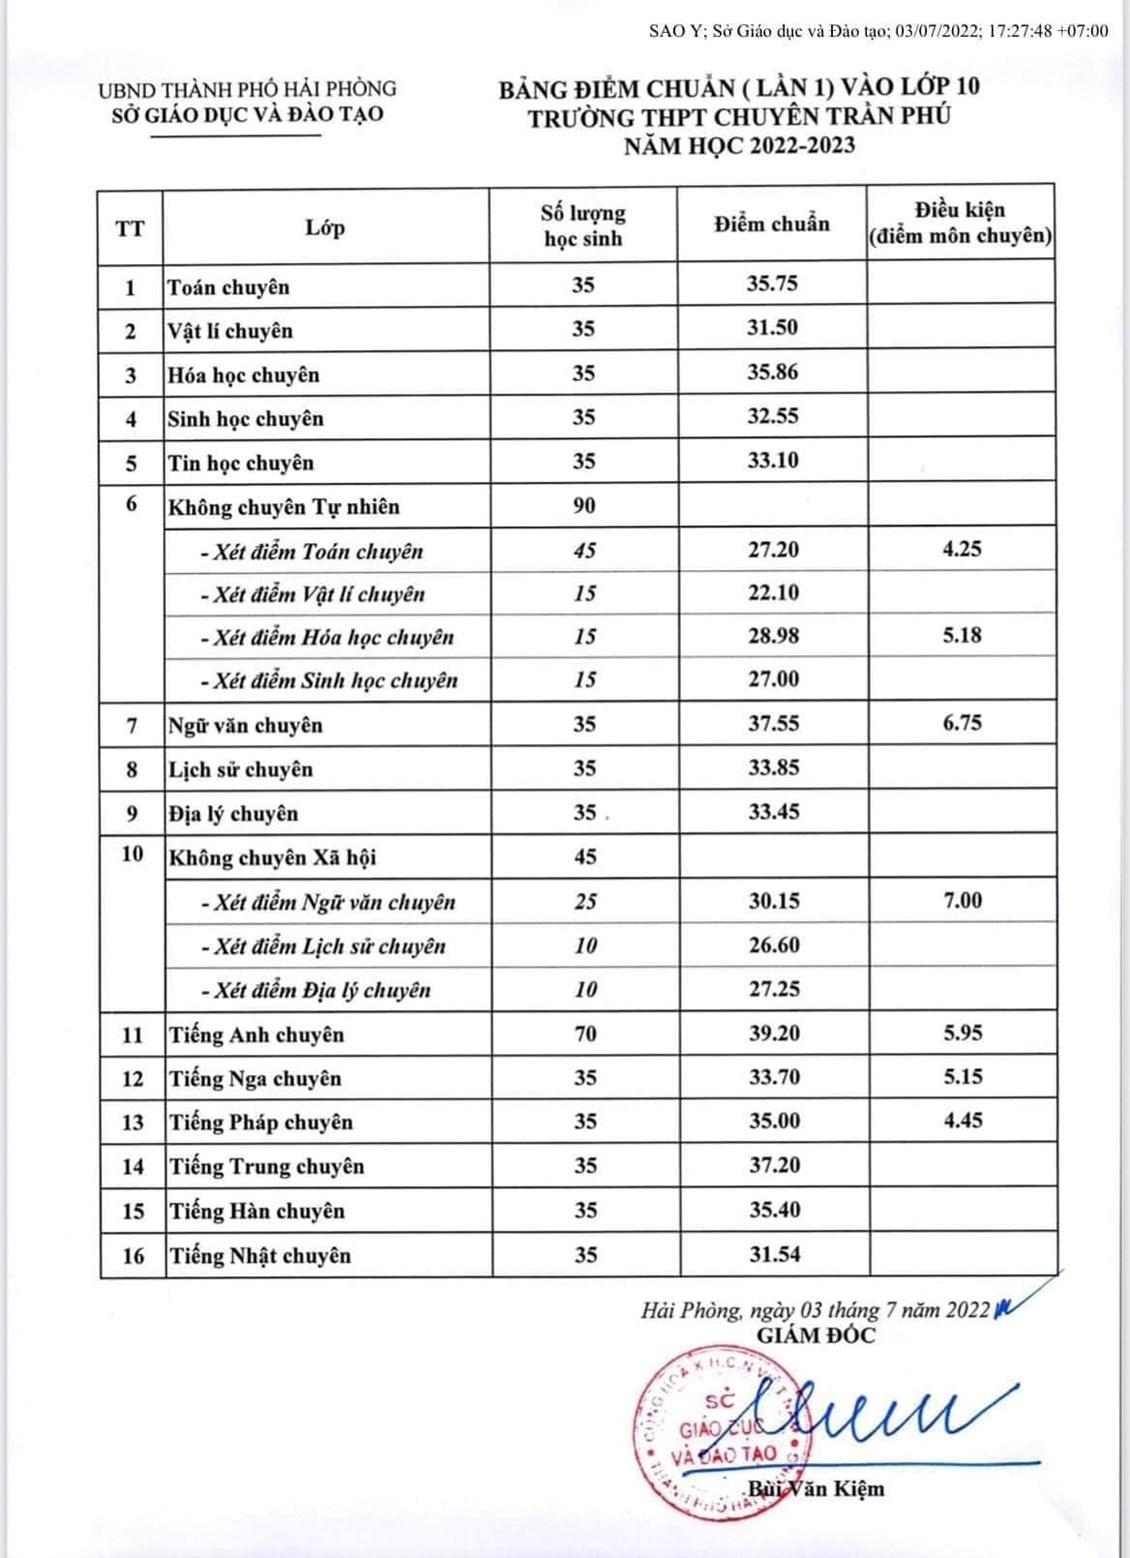 Bảng điểm chuẩn lần 1 vào lớp 10 trường THPT Chuyên Trần Phú năm học 2022-2023